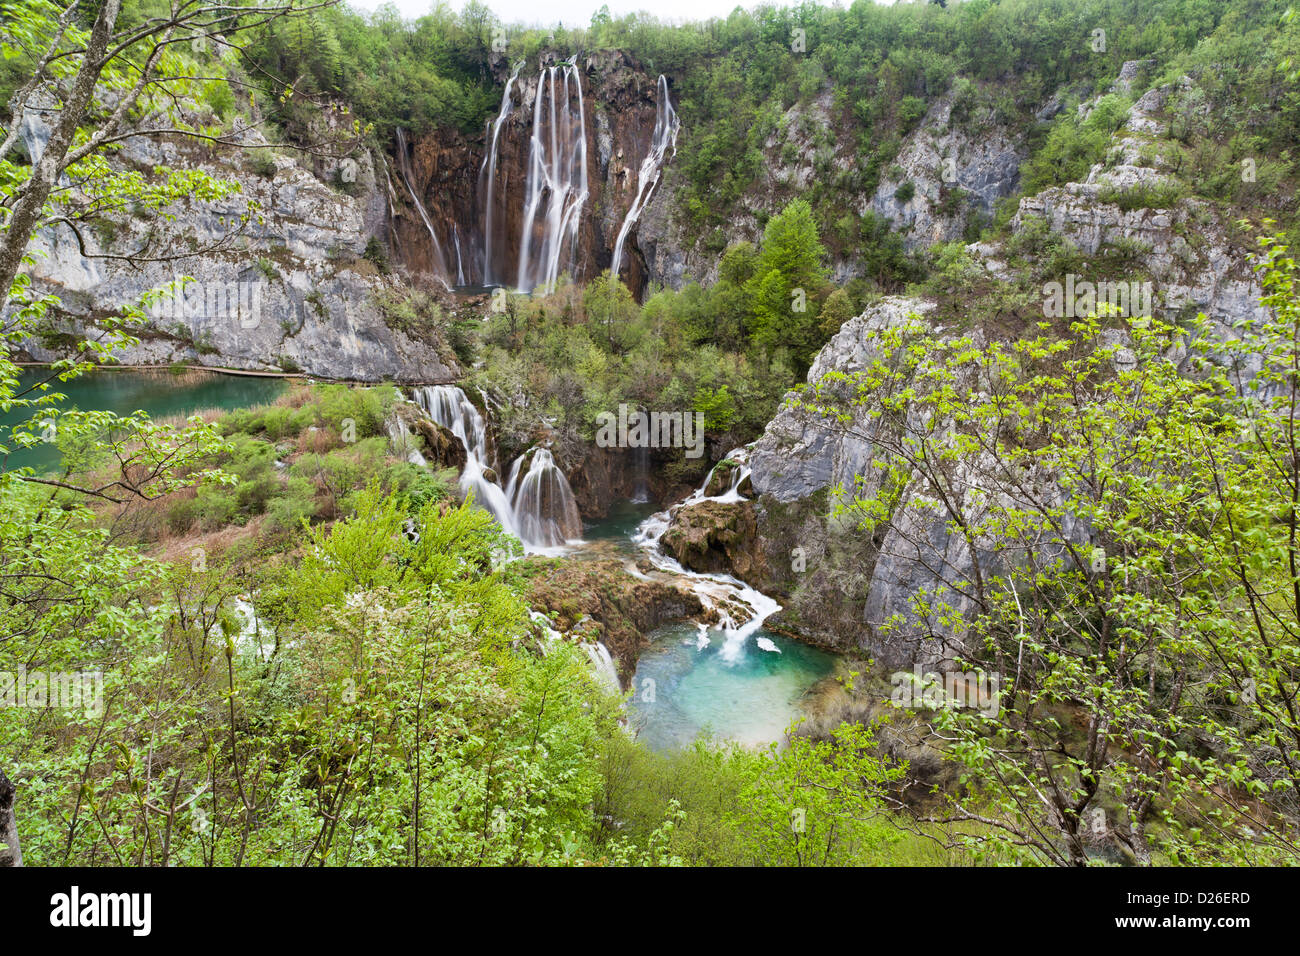 Los lagos de Plitvice en el Parque Nacional de Plitvicka Jezera en Croacia. La gran caída (Veliki slap) en primavera. Europa, el sur de Croacia Foto de stock